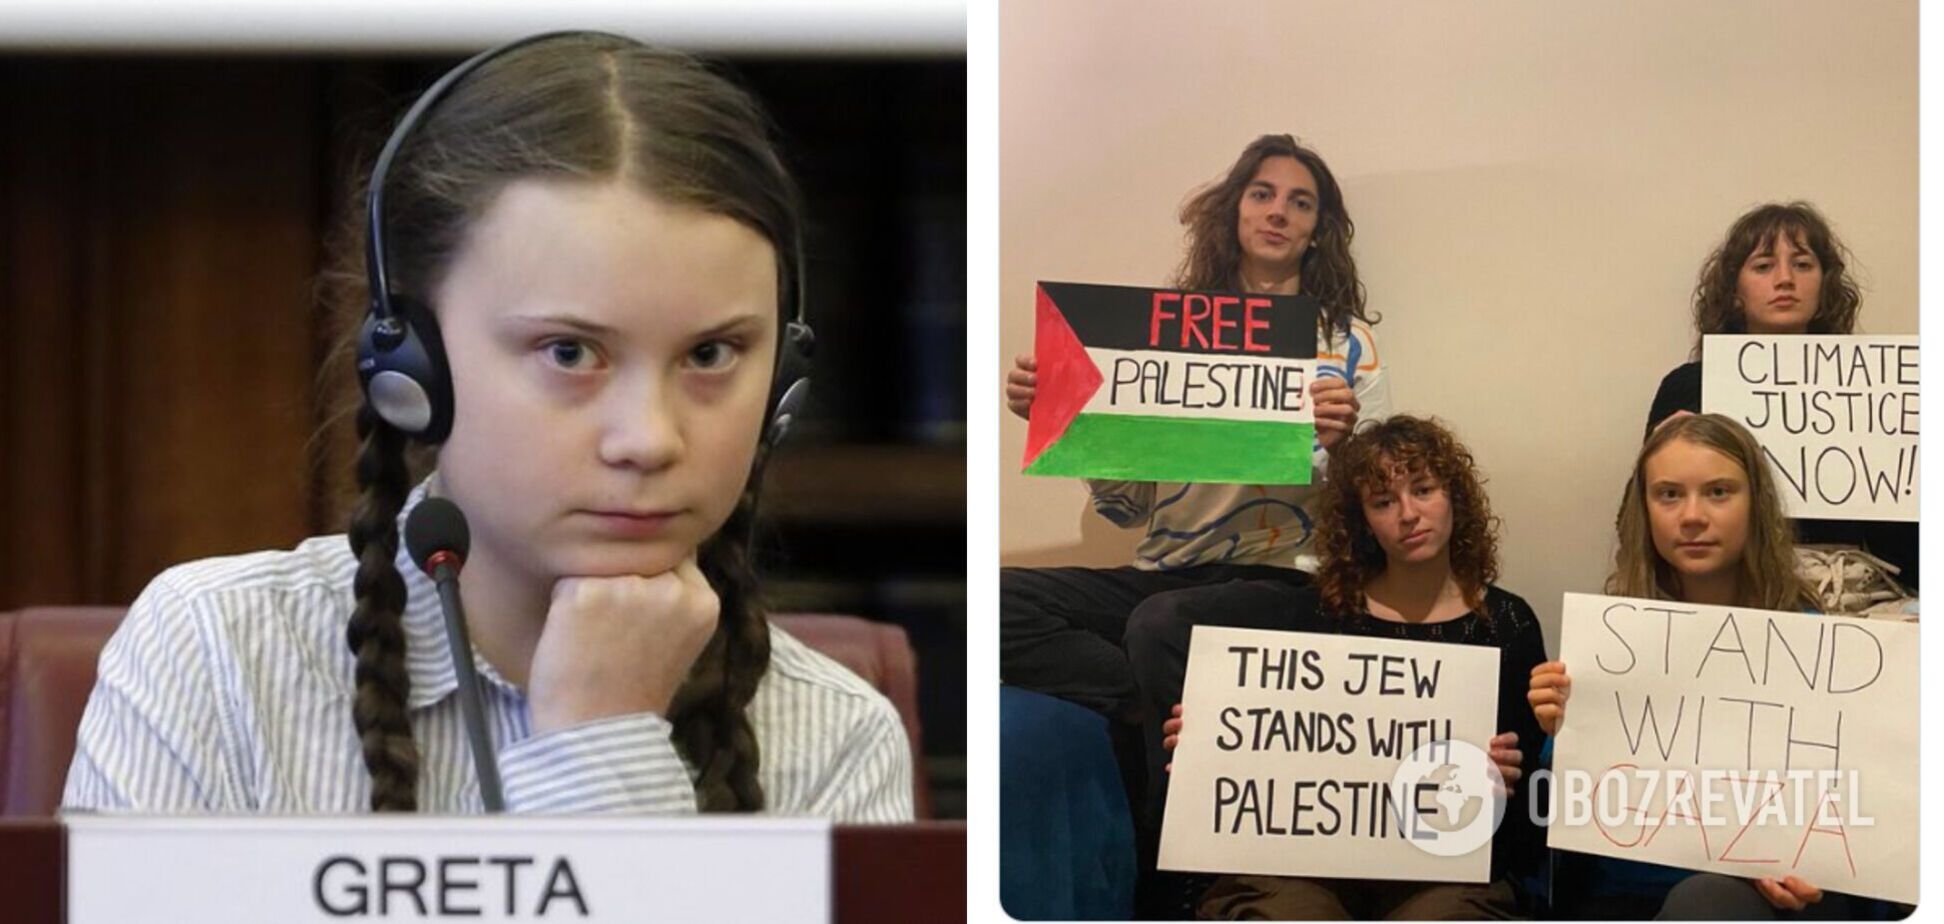 'Більше не може бути прикладом для школярів': в Ізраїлі з підручників видалять згадки про Грету Тунберг, яка підтримала Палестину і сектор Газа